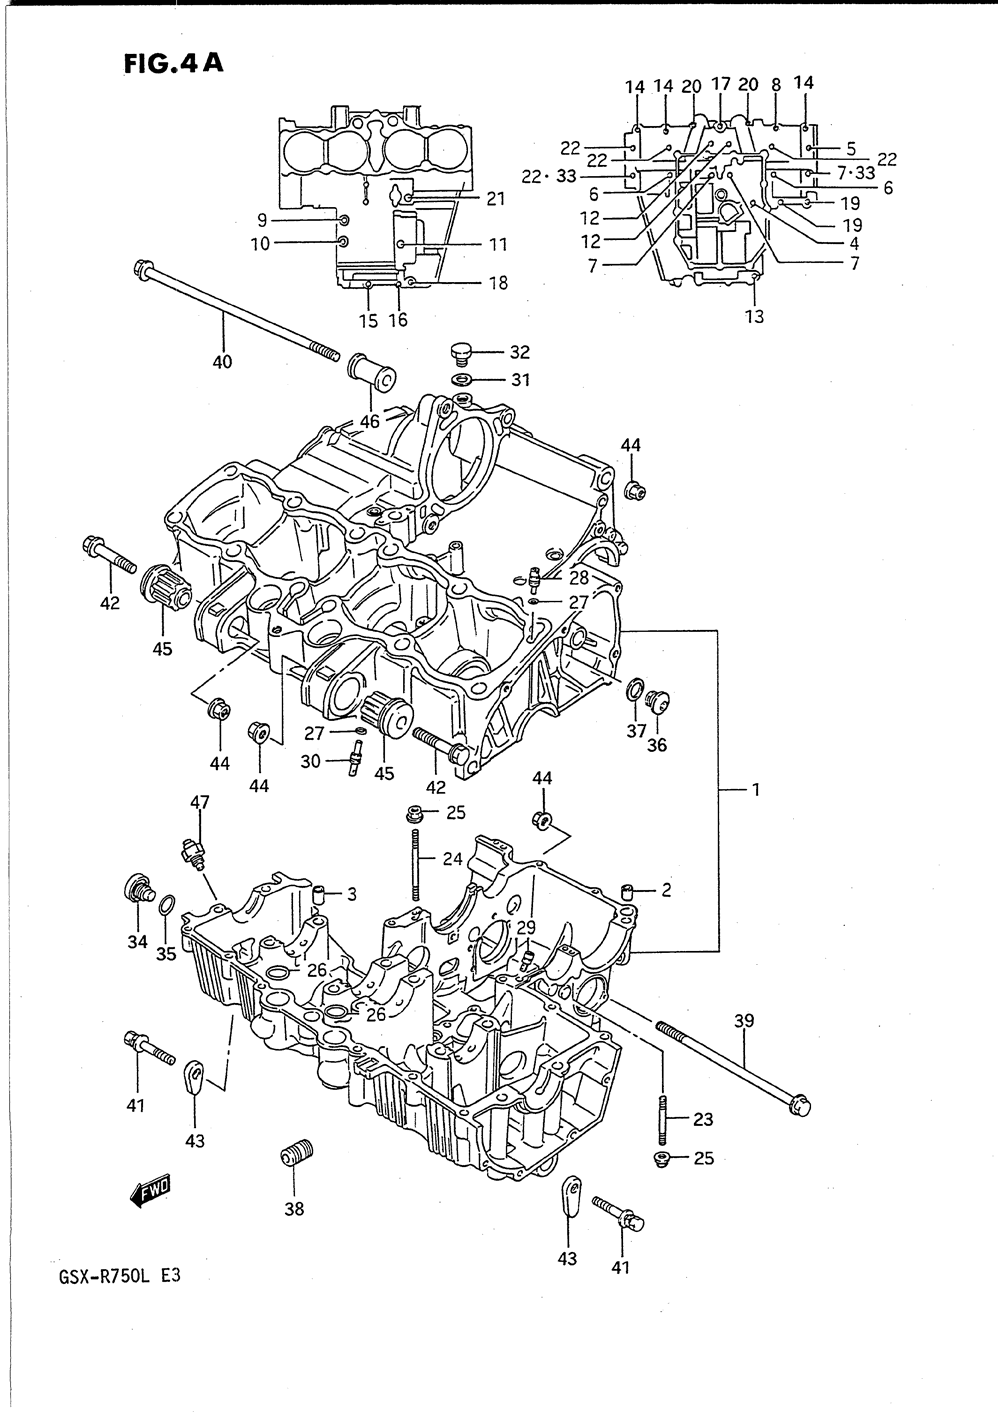 Crankcase (model l)